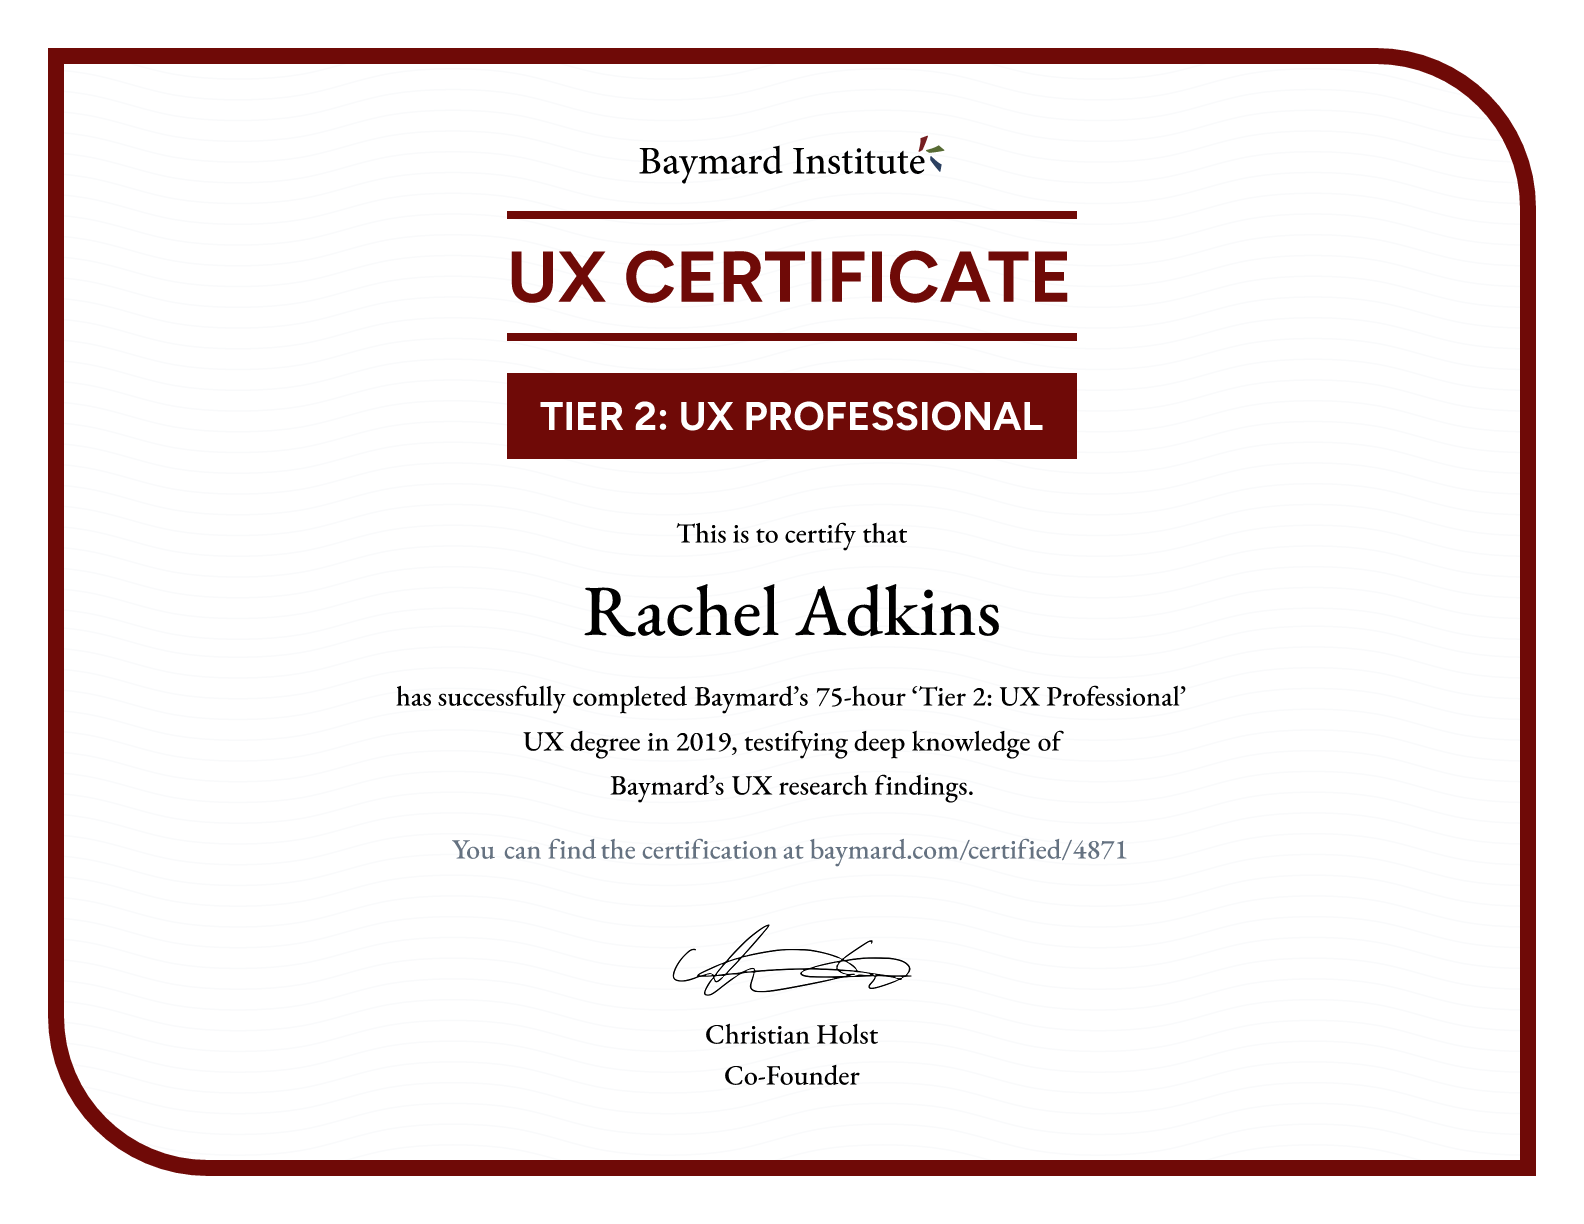 Rachel Adkins’s certificate